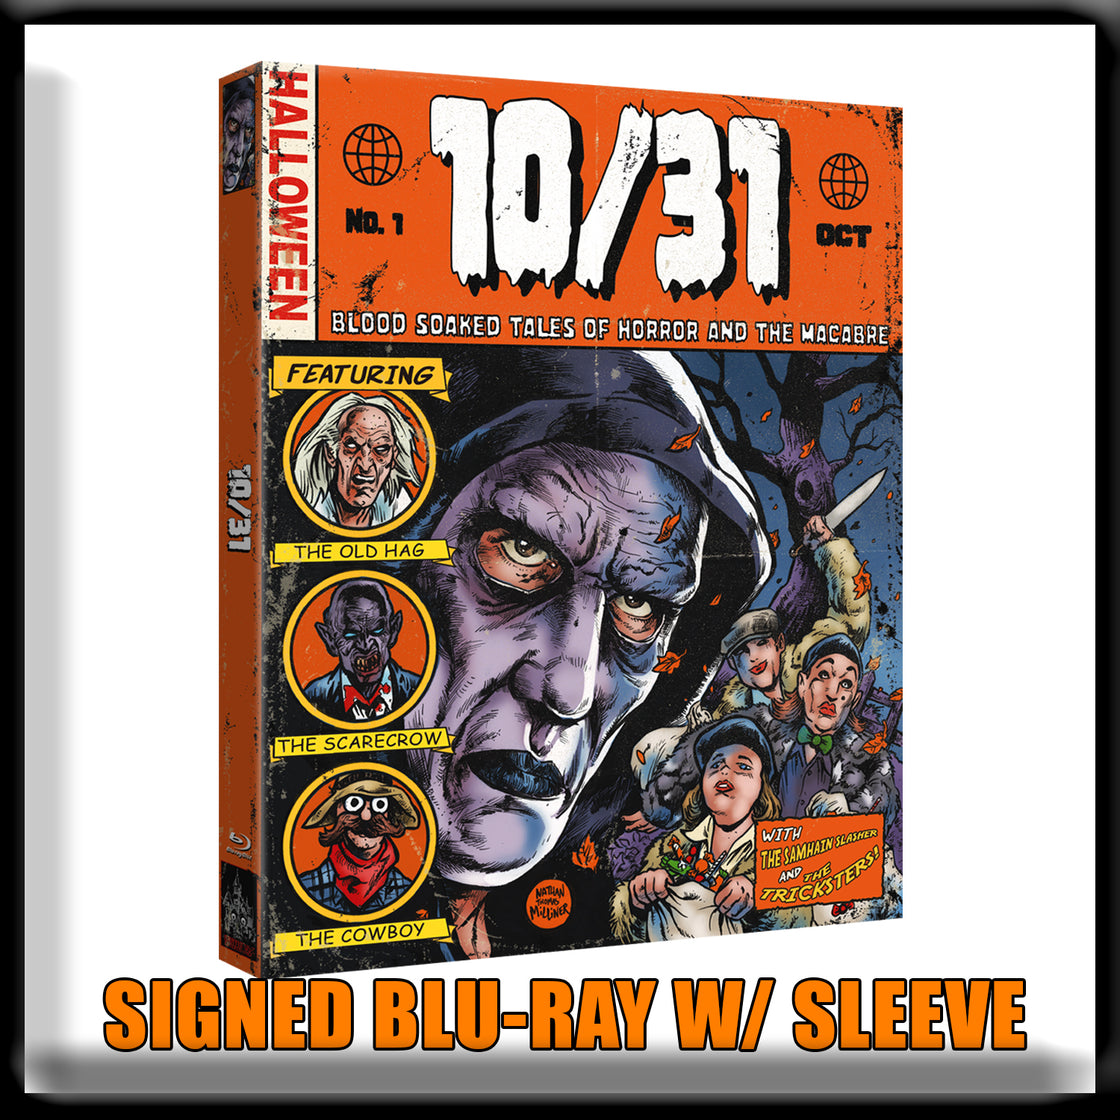 10/31 - Special Collectors Edition (Blu-ray)